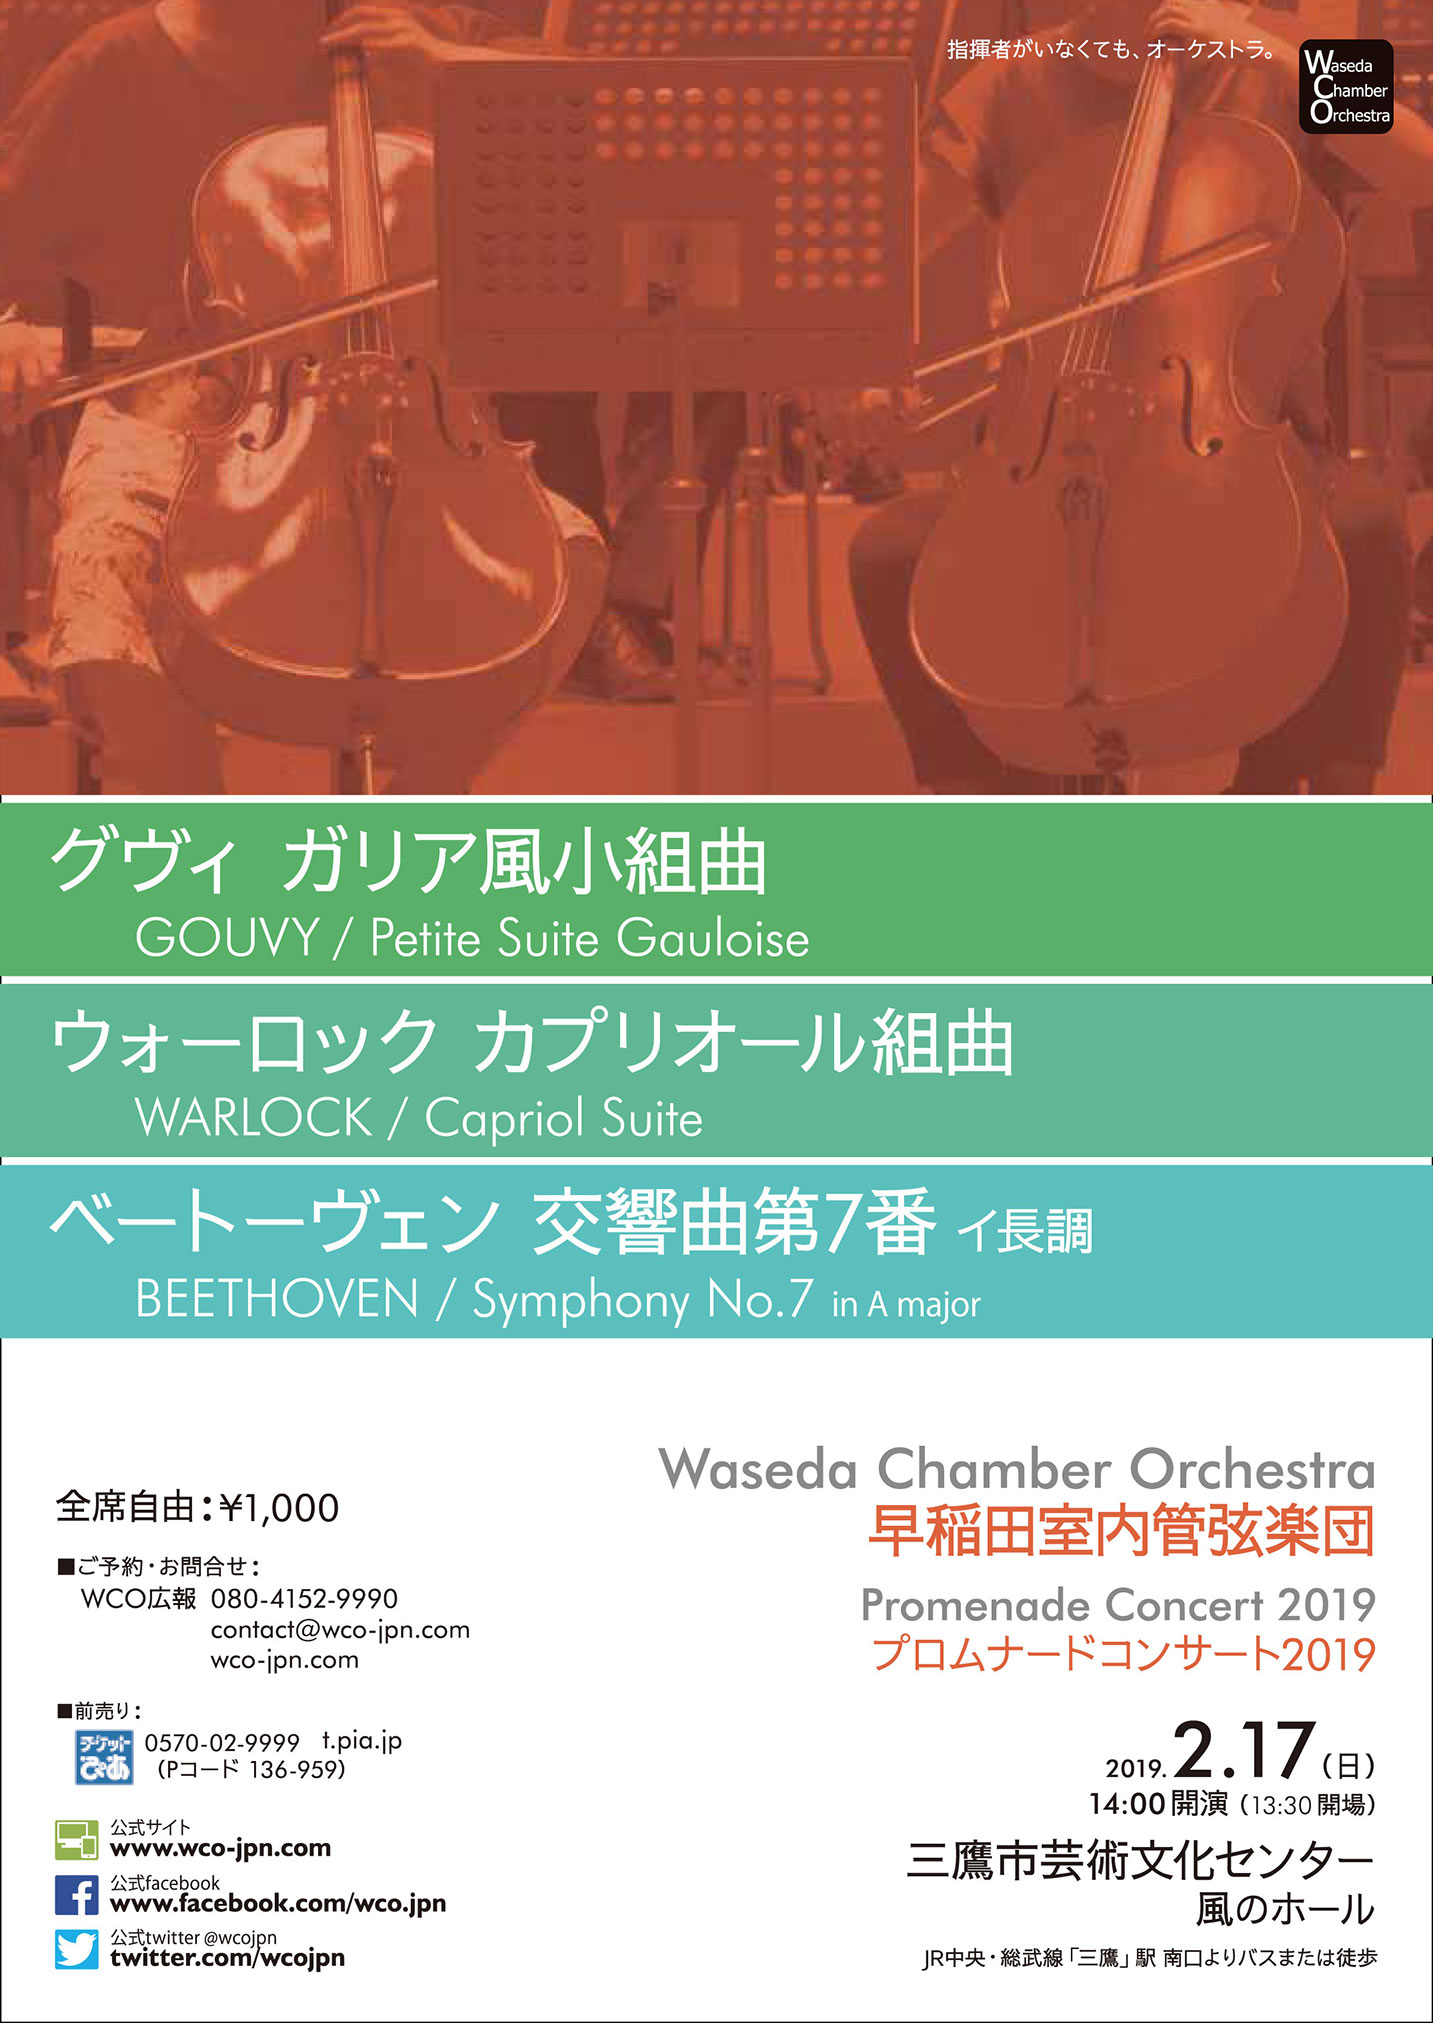 早稲田室内管弦楽団 プロムナードコンサート2019